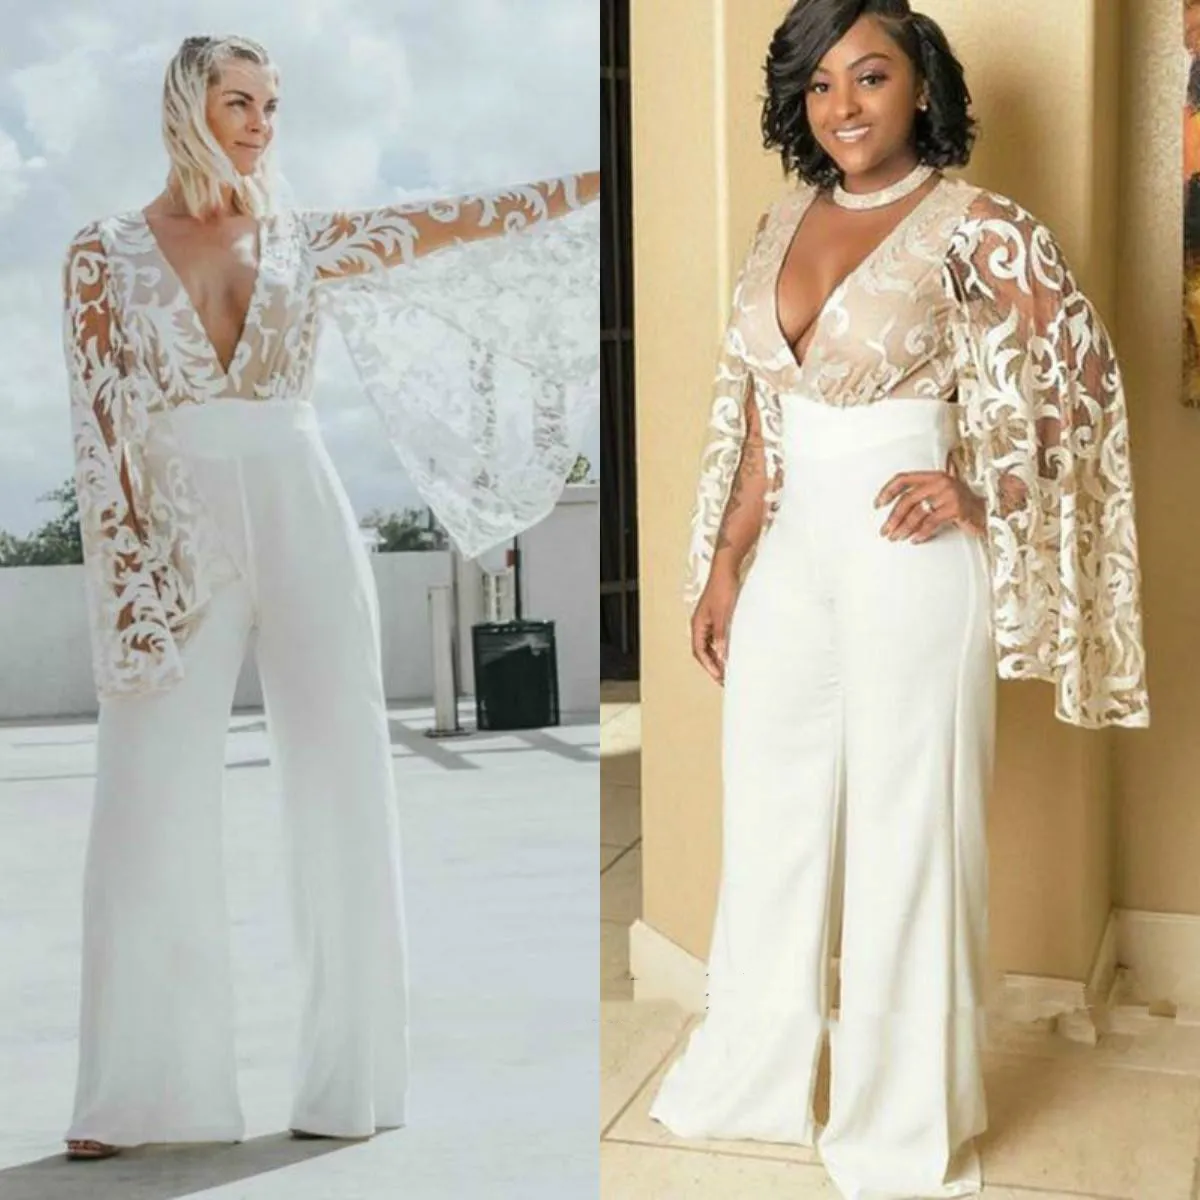 Cape V Neck Boho Jumpsuit Wedding Dresses Bridal Gowns Lace Top Full Sleeves Split Plus Size Women Pants Suit Beach Bride Dress